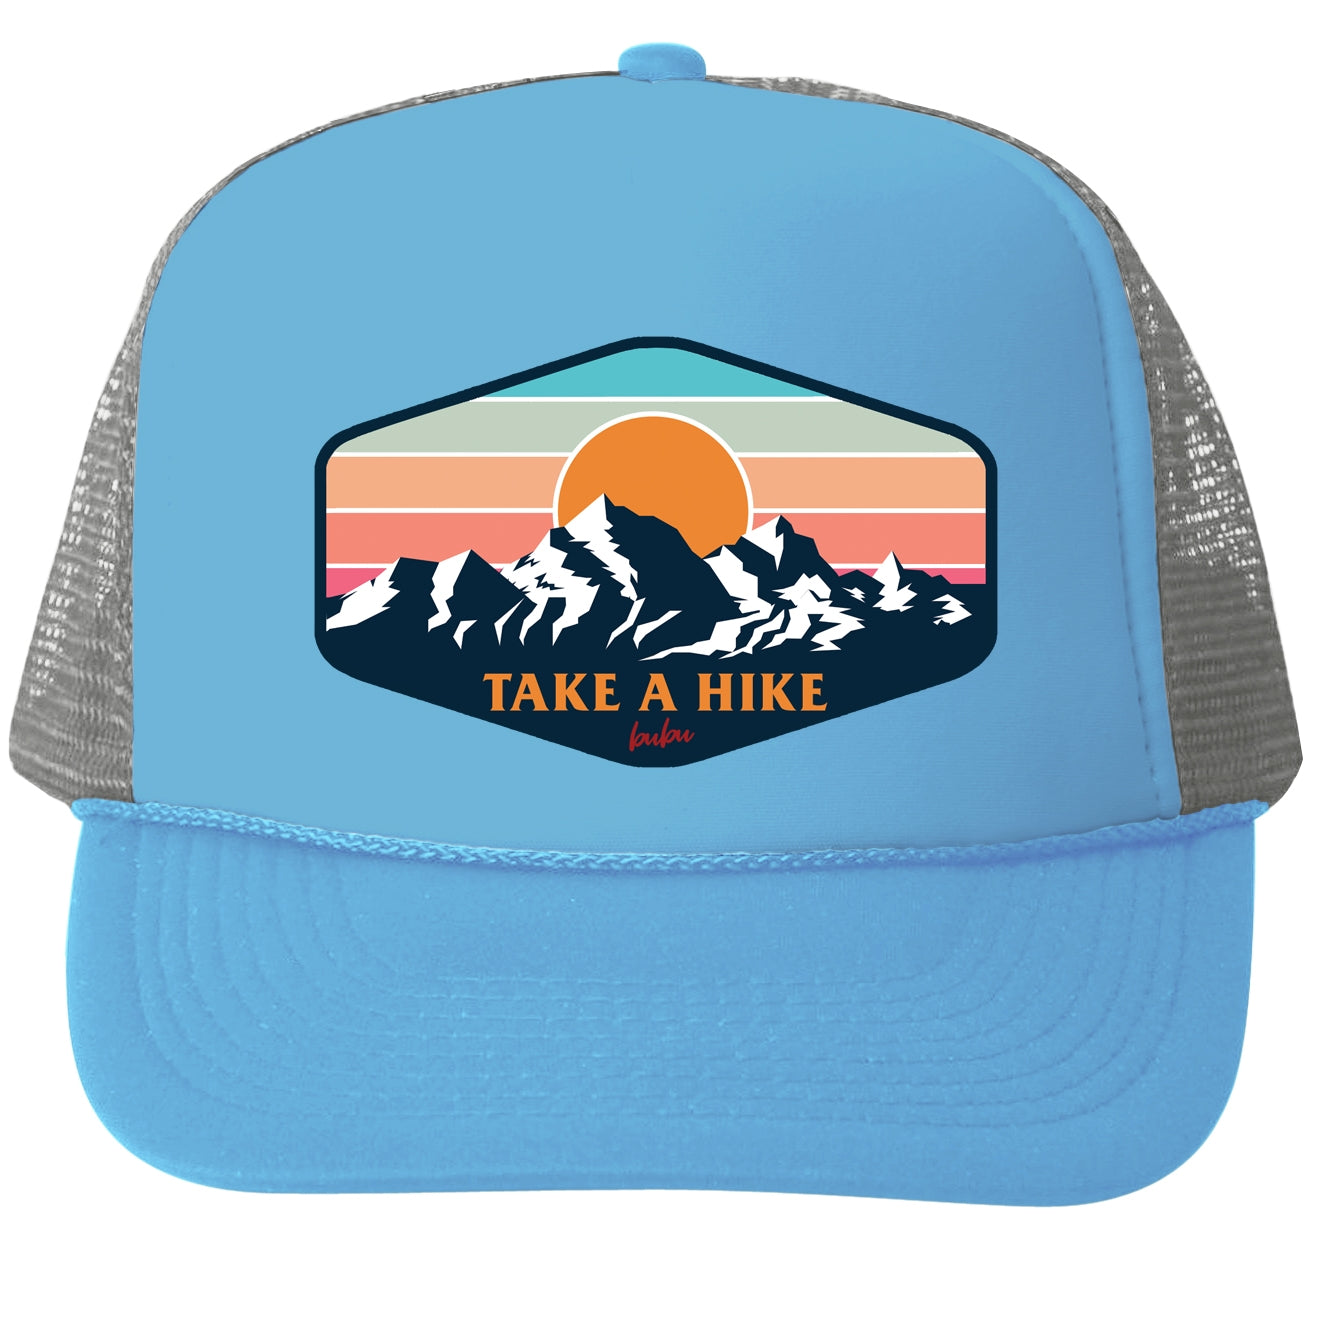 Bubu take a hike trucker hat